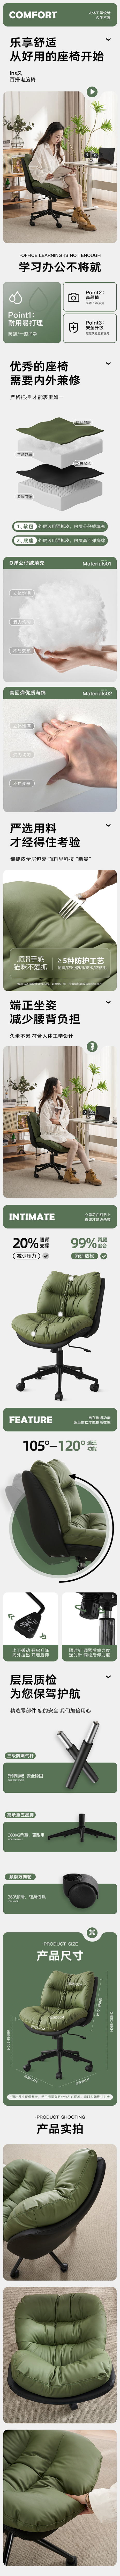 椅子详情-志设网-zs9.com